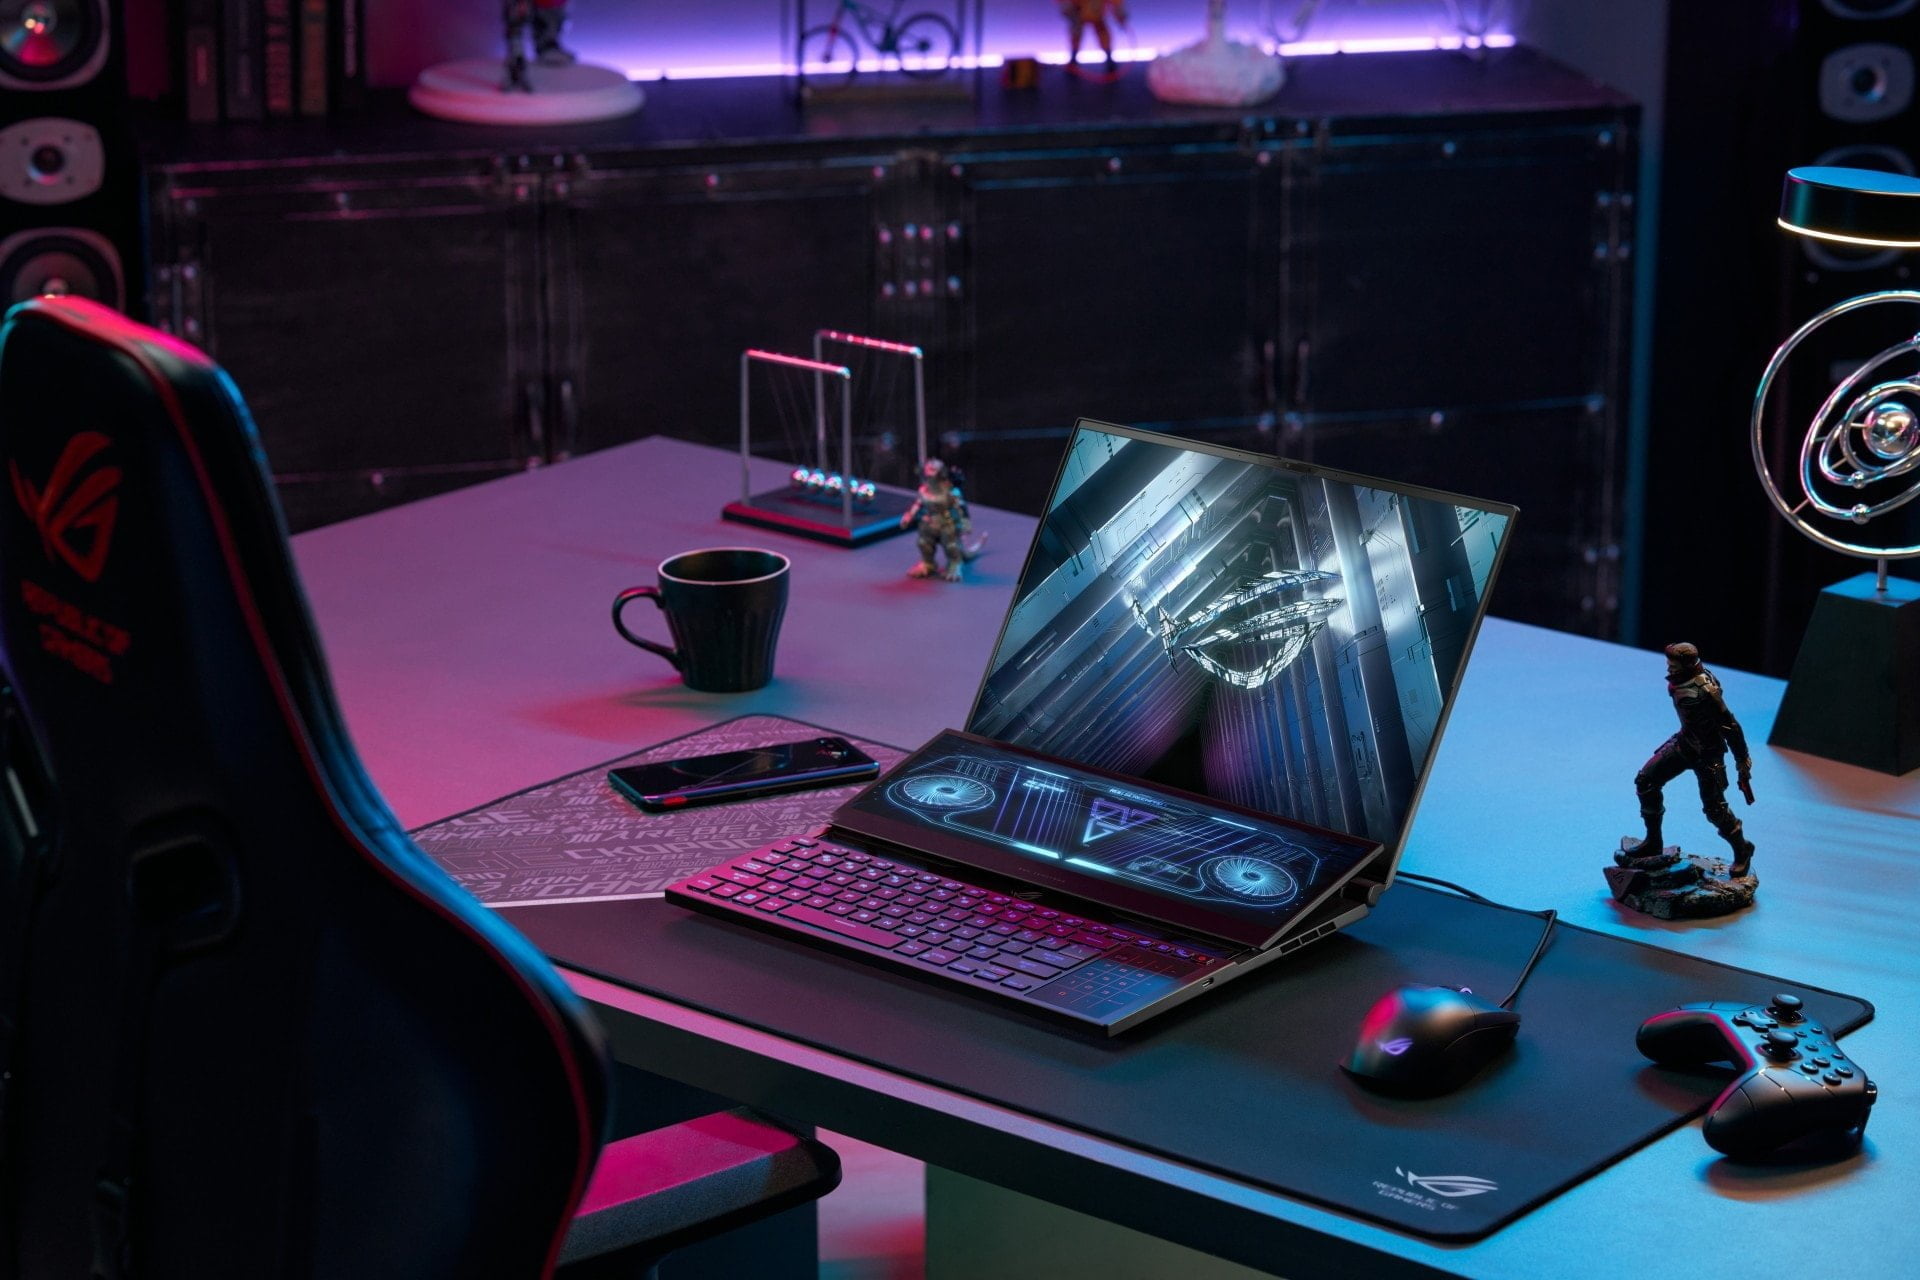  ASUS Republic of Gamers bứt phá mọi giới hạn với loạt sản phẩm Laptop Gaming tuyệt đỉnh ở CES 2022